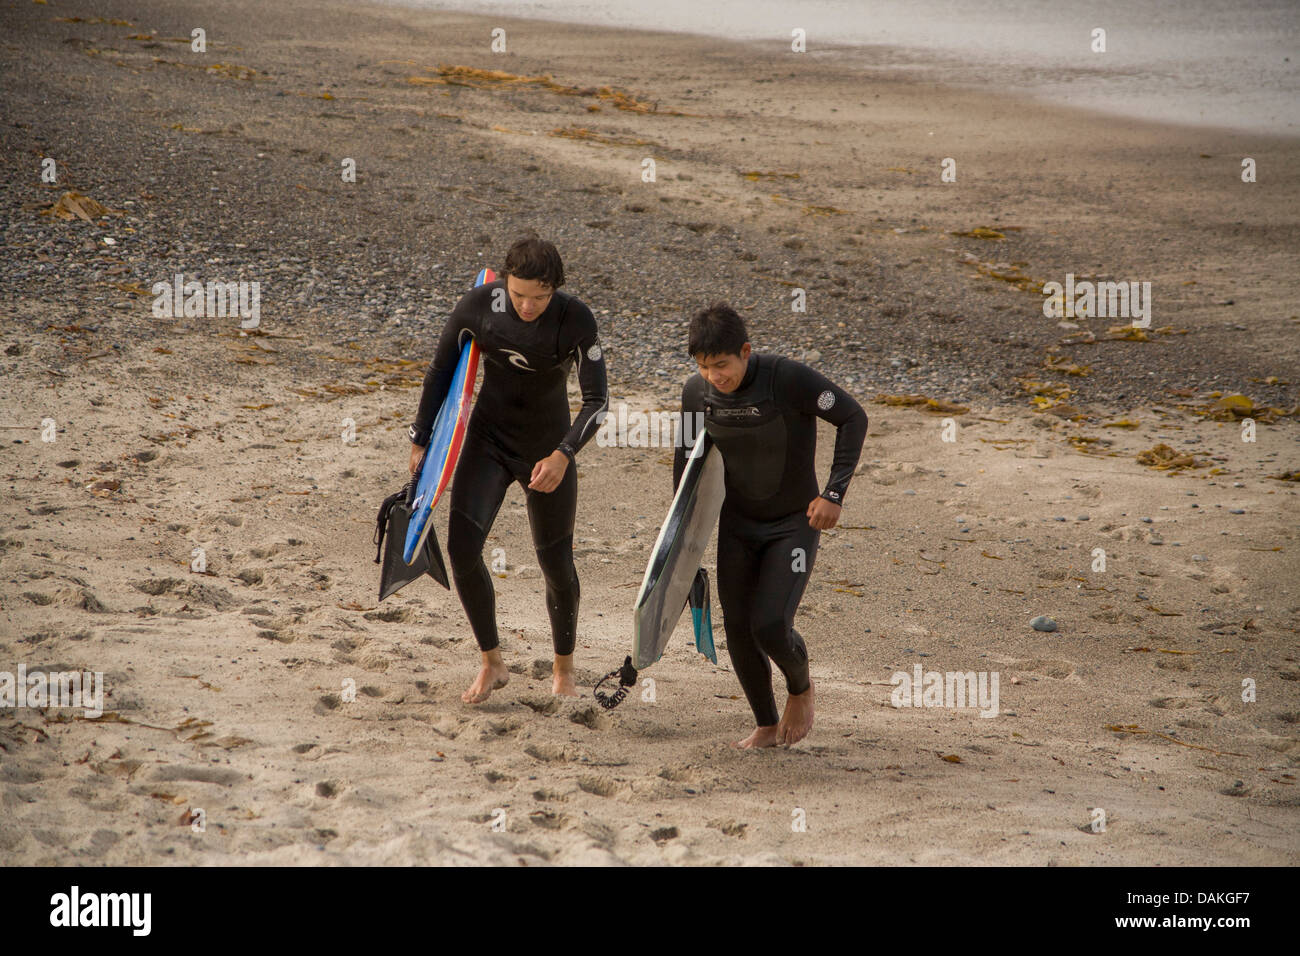 Le port de combinaisons et l'exécution des planches, deux adolescent membres de l'équipe de surf de l'école secondaire à pied à travers la ville's beach. Banque D'Images